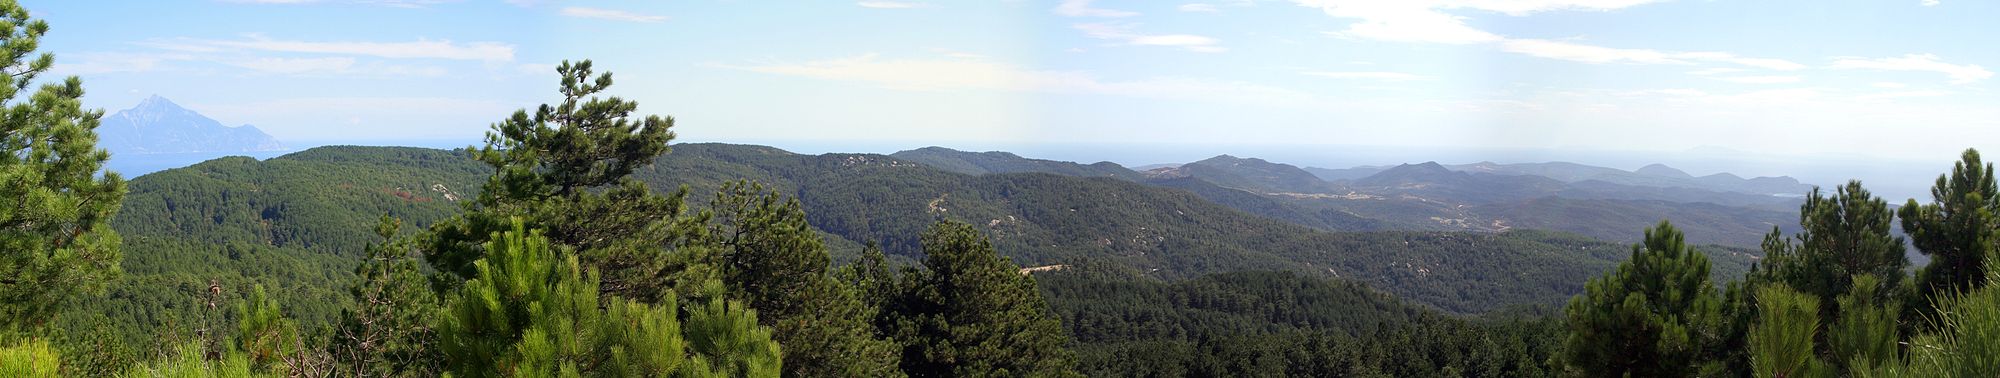 Panorama vom Athos bis Toroni. Blick vom Berg Itamos